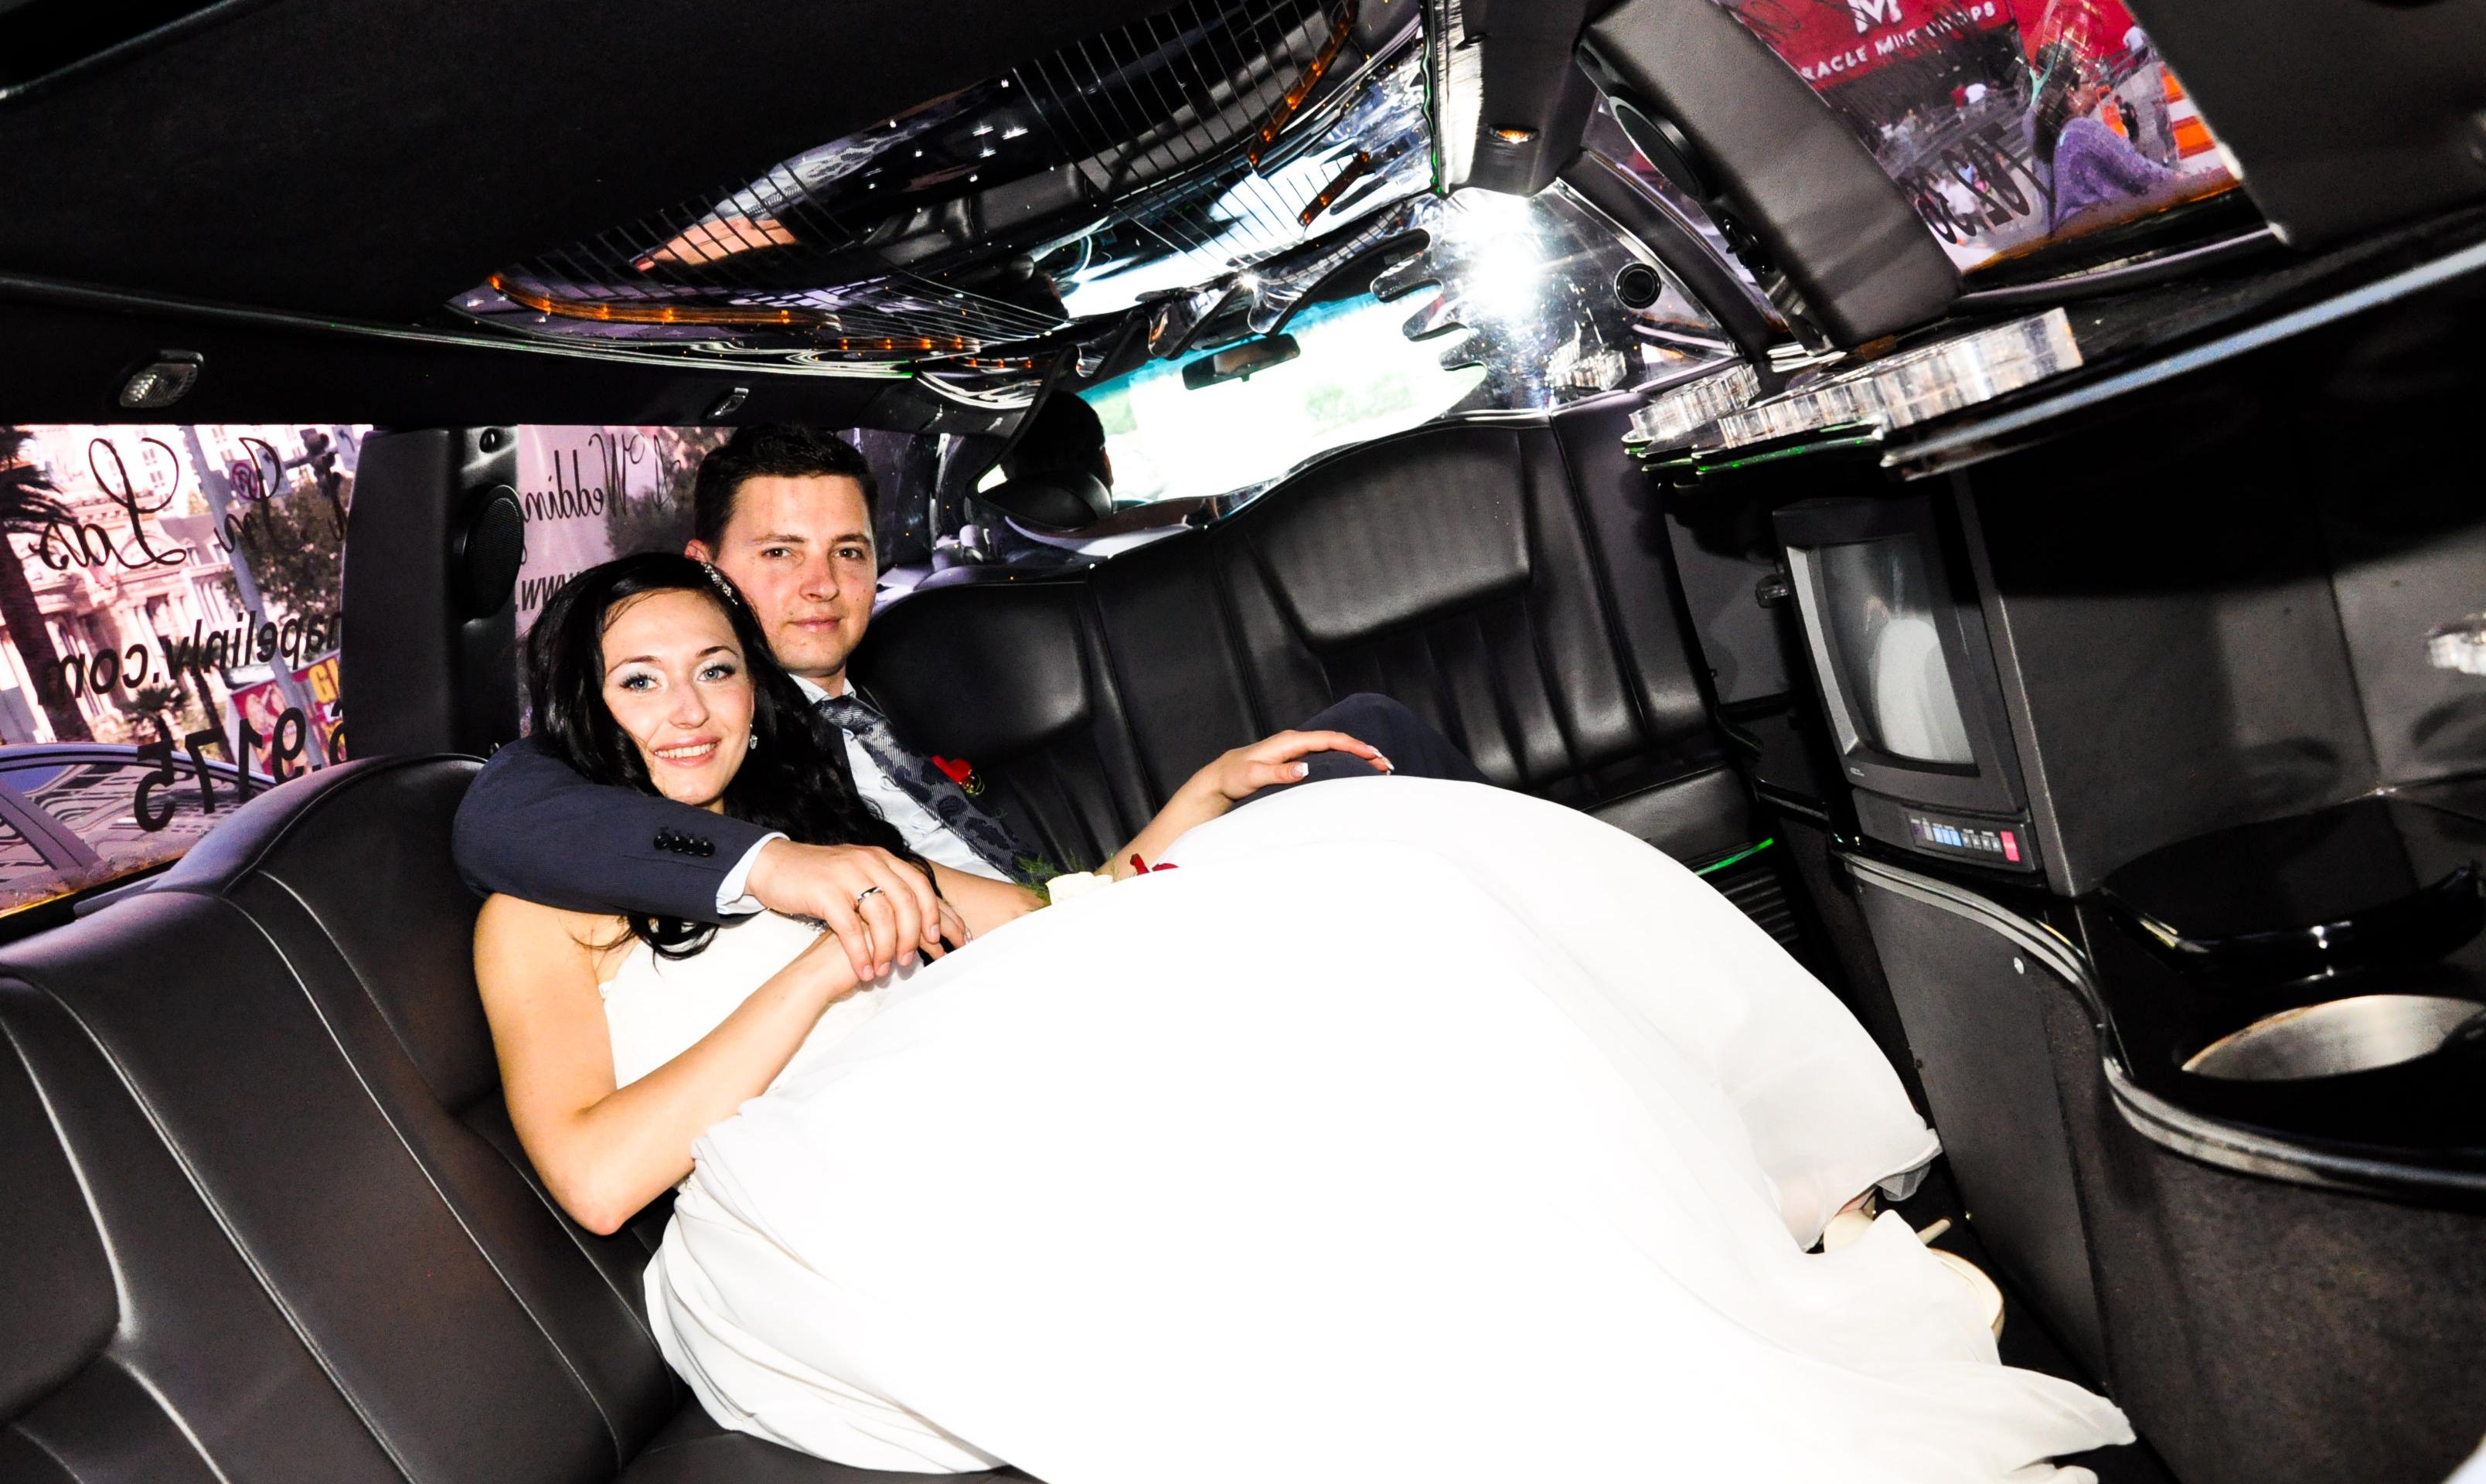 Mariage en limousine à Las Vegas